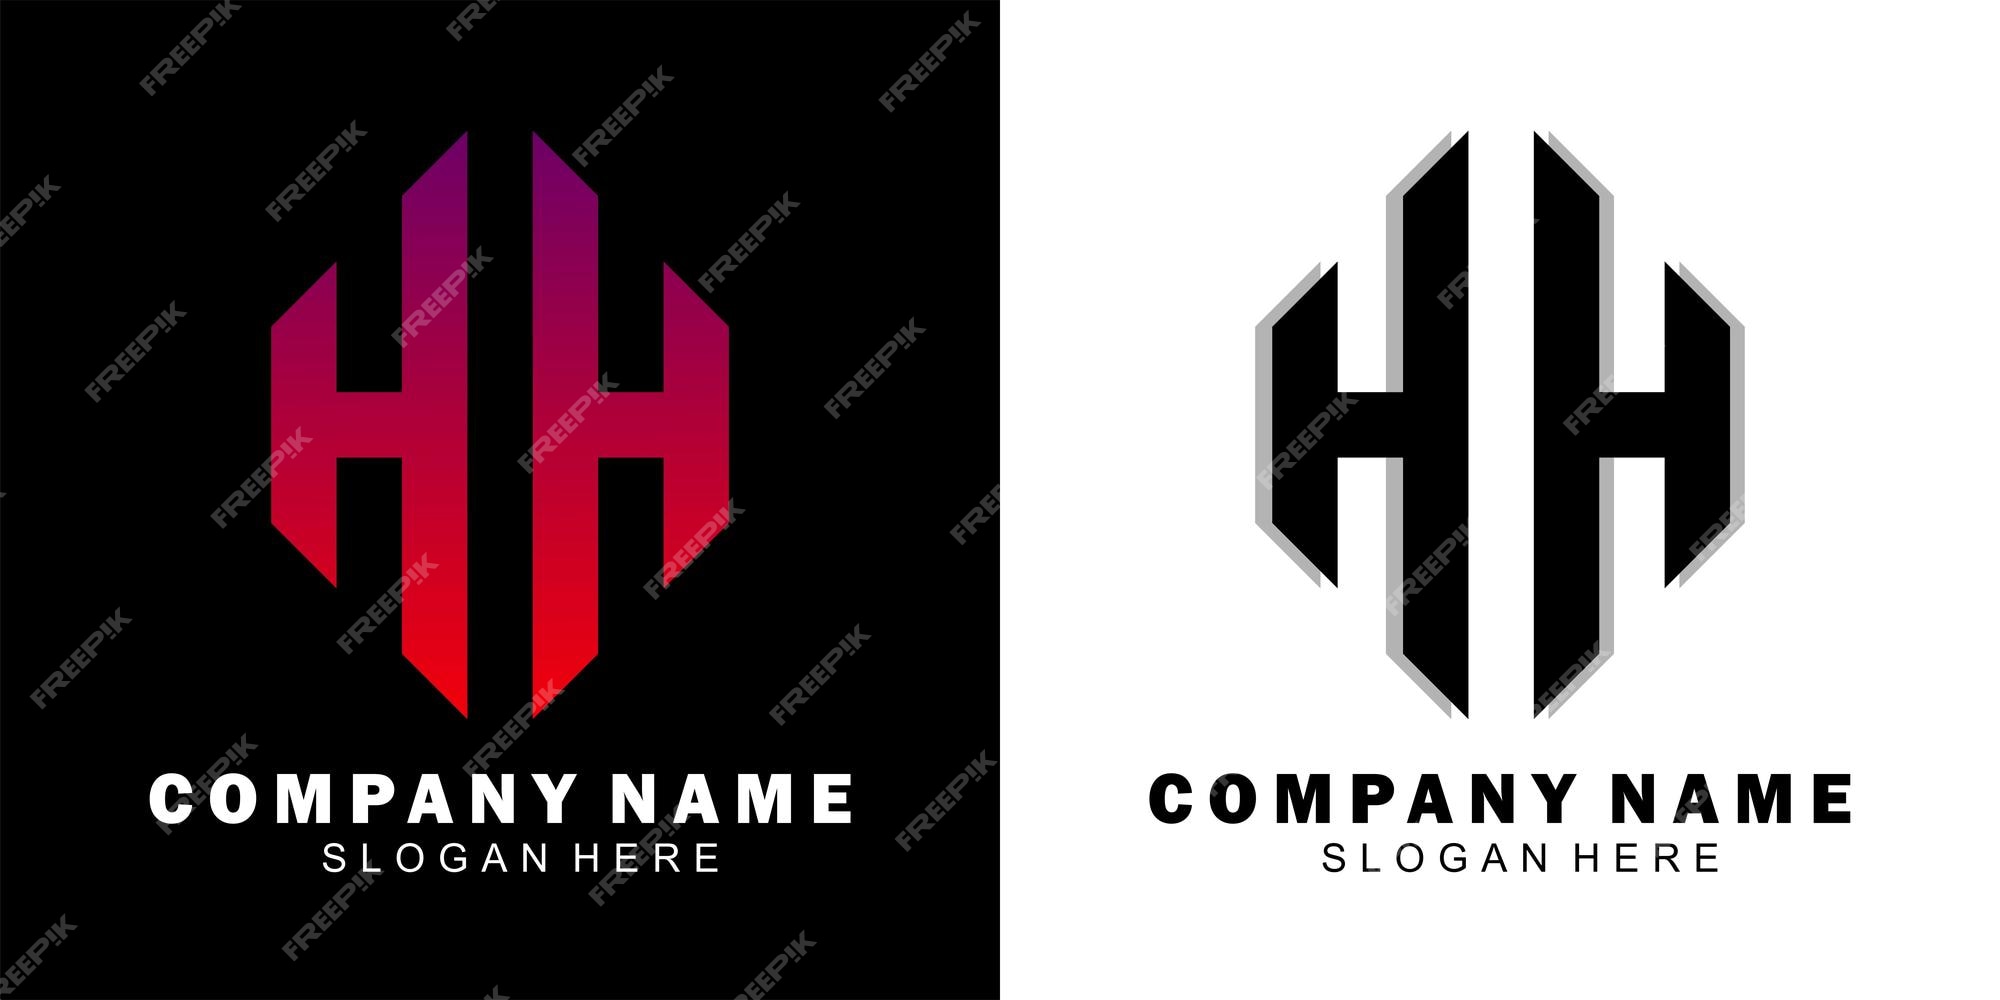 Nếu bạn đang tìm kiếm một thiết kế logo đẹp mắt và chuyên nghiệp cho thương hiệu của mình, hãy đến với HH Logo Design. Chúng tôi cam kết mang đến cho bạn một sản phẩm độc đáo và có ý nghĩa để thể hiện giá trị của thương hiệu.